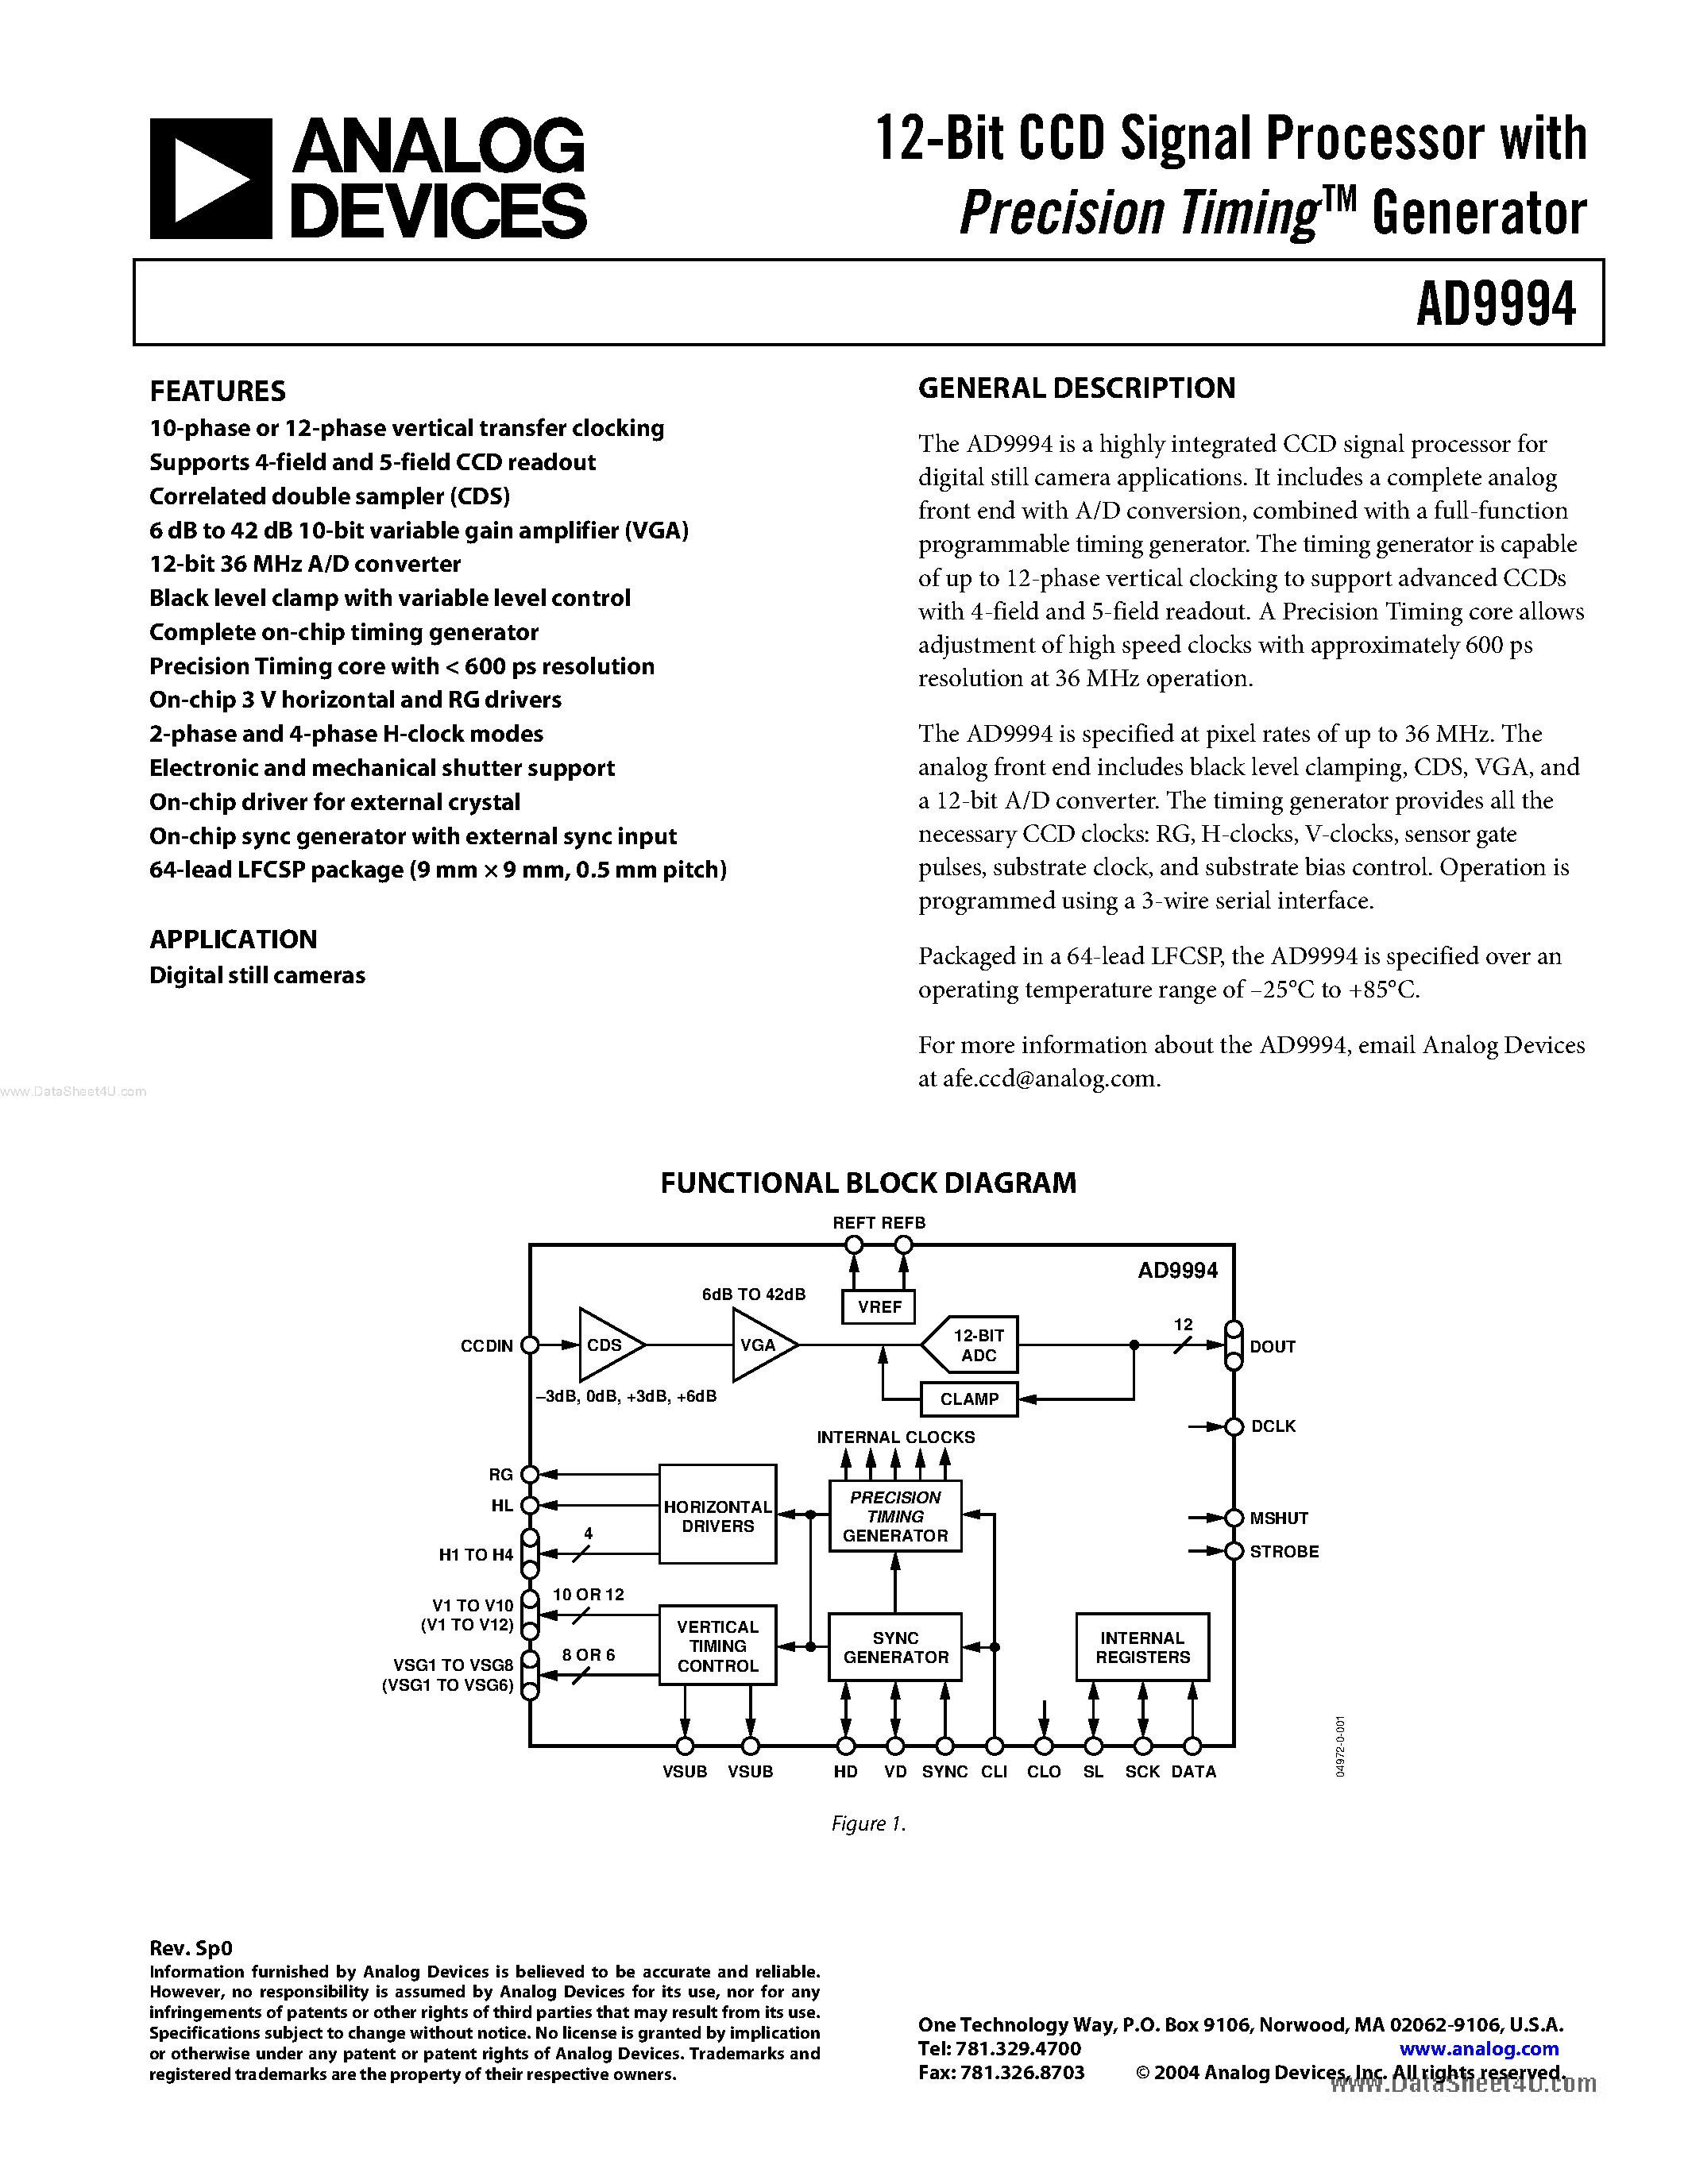 Даташит AD9994 - 12-Bit CCD Signal Processor страница 1